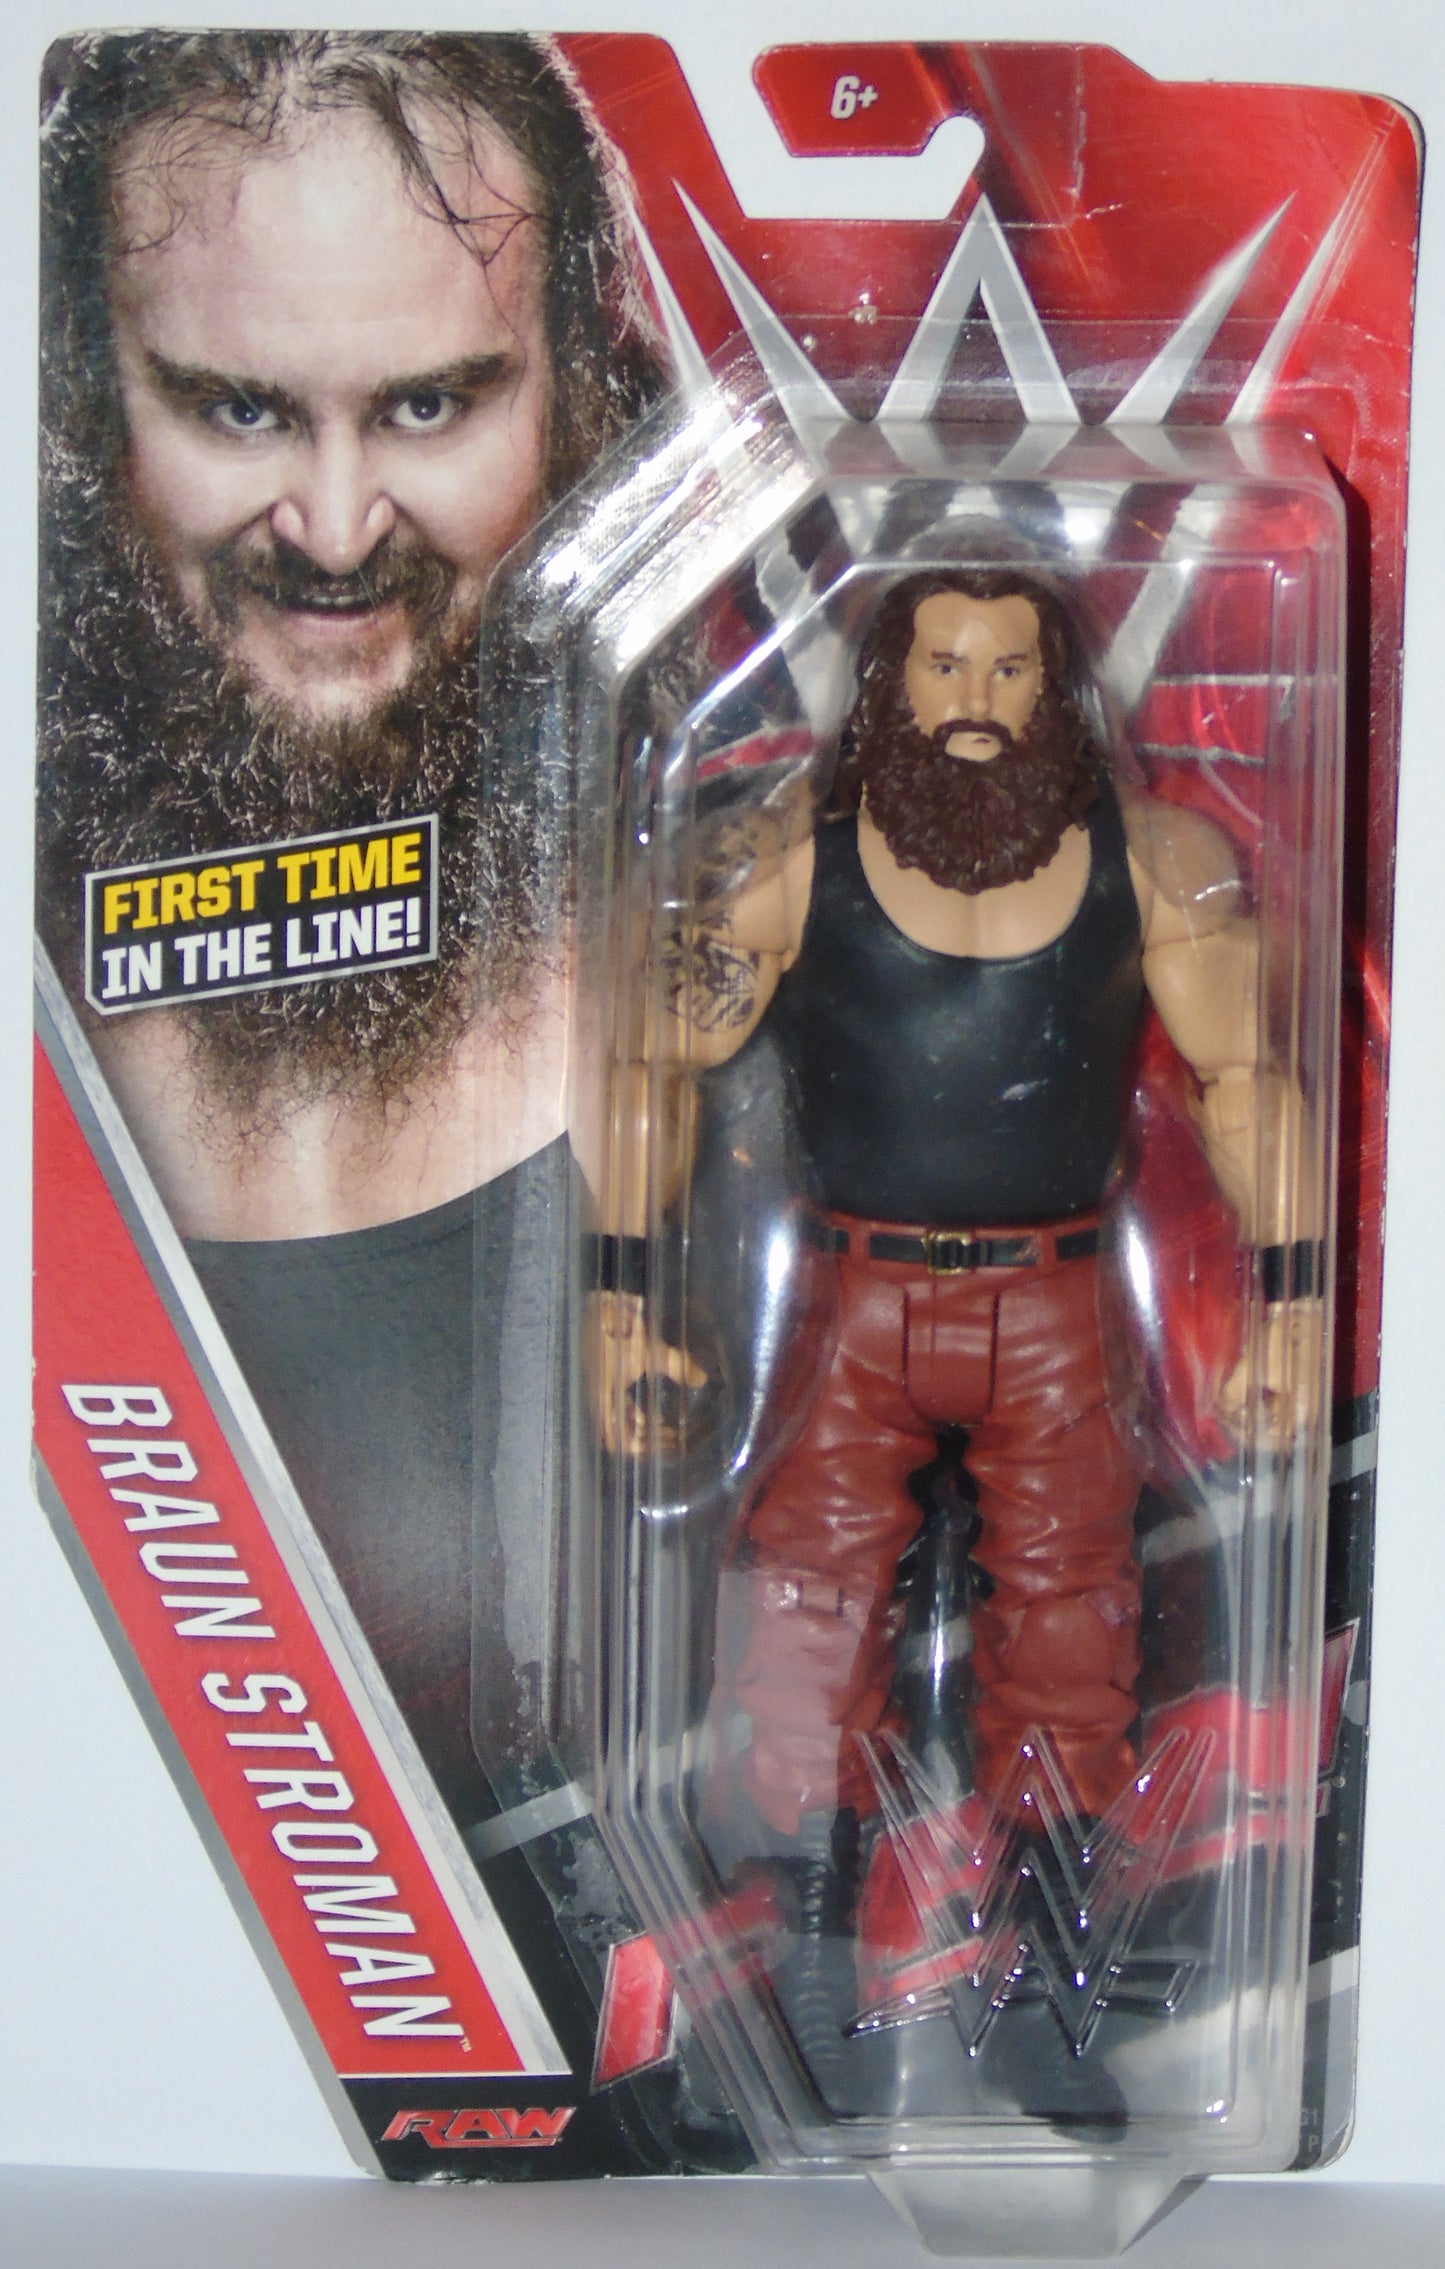 Braun Strowman WWE Mattel Figure